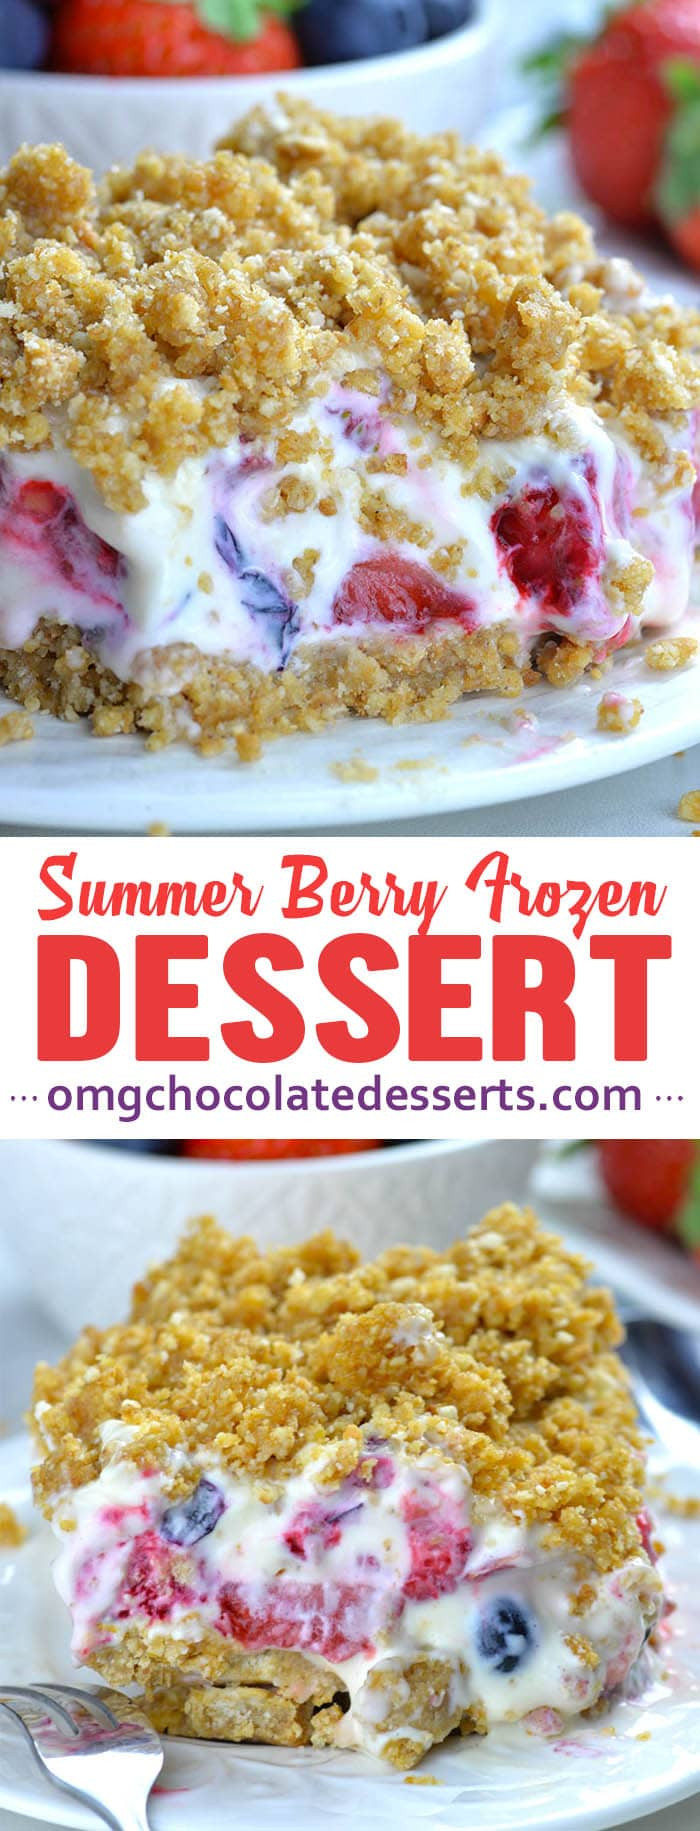 Freezer Desserts Recipes
 Summer Berry Frozen Dessert